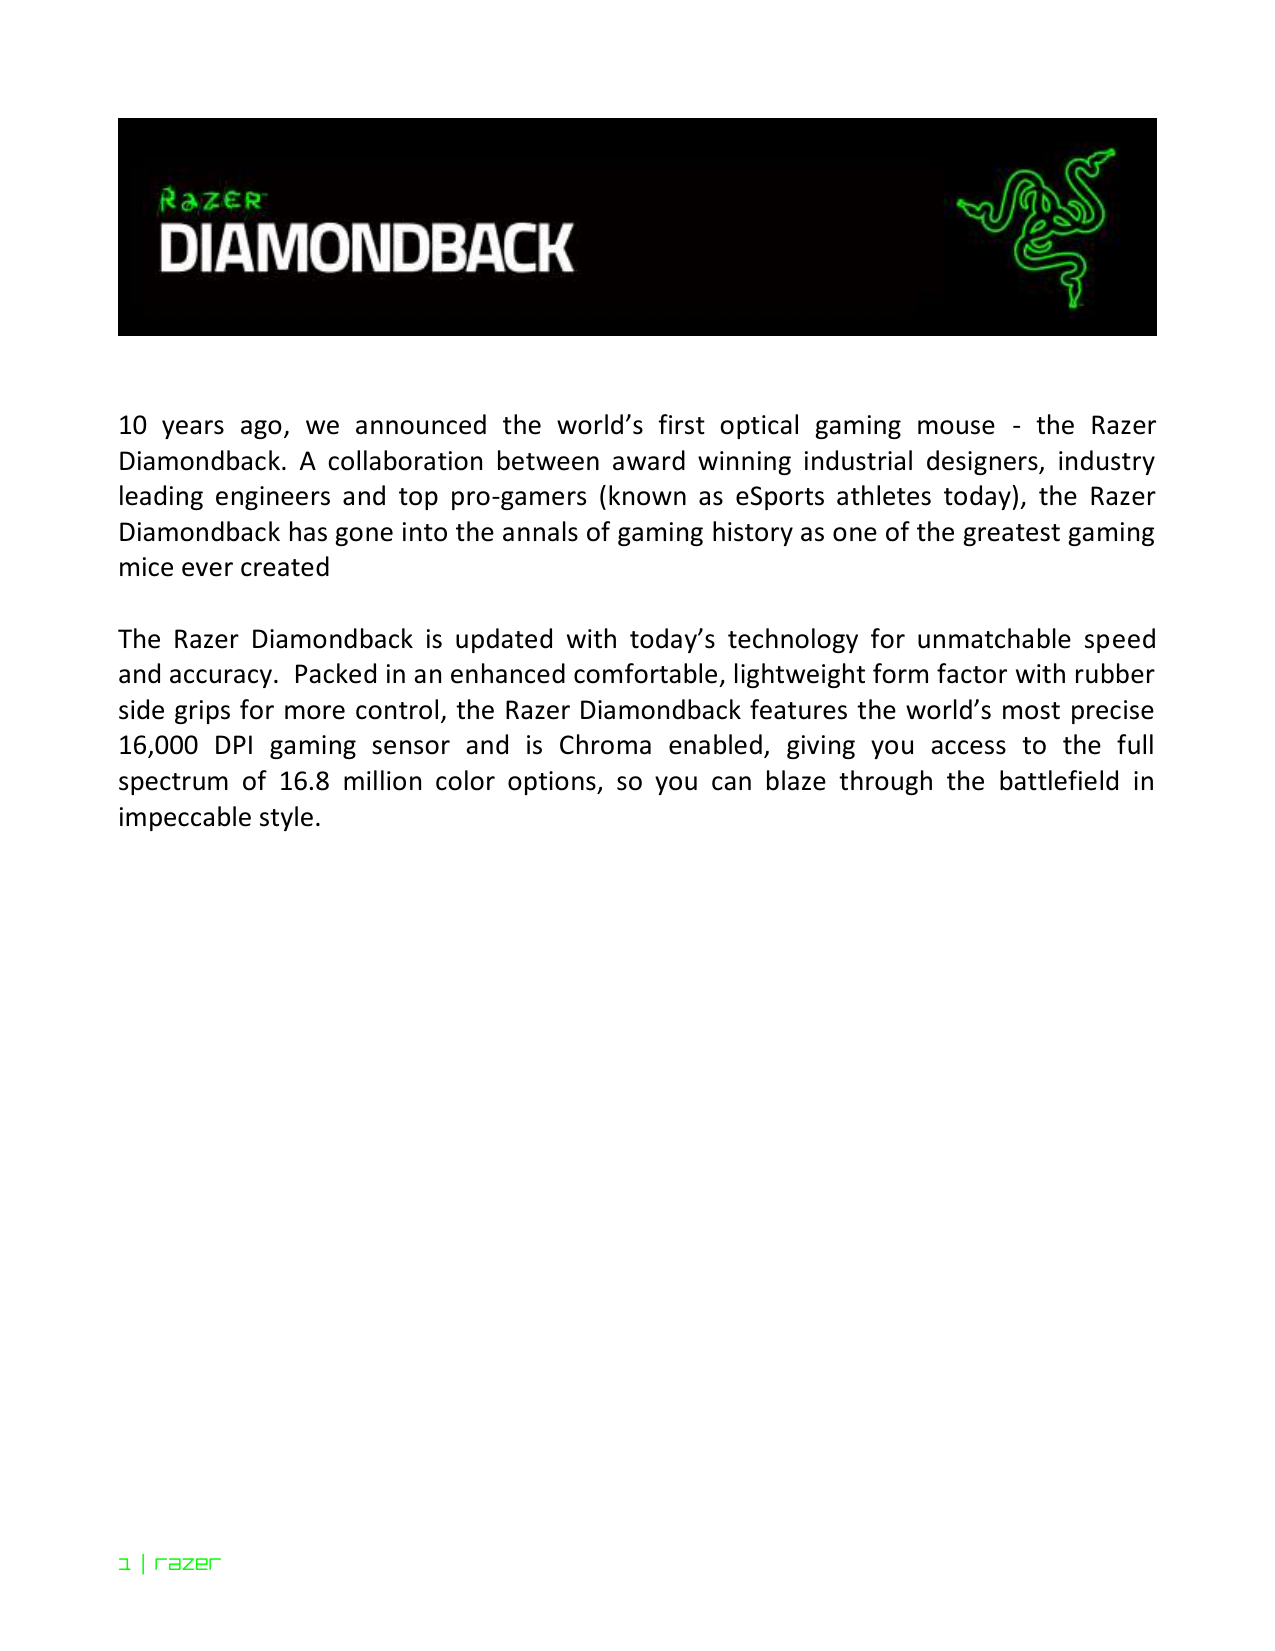 diamondback serial number guide